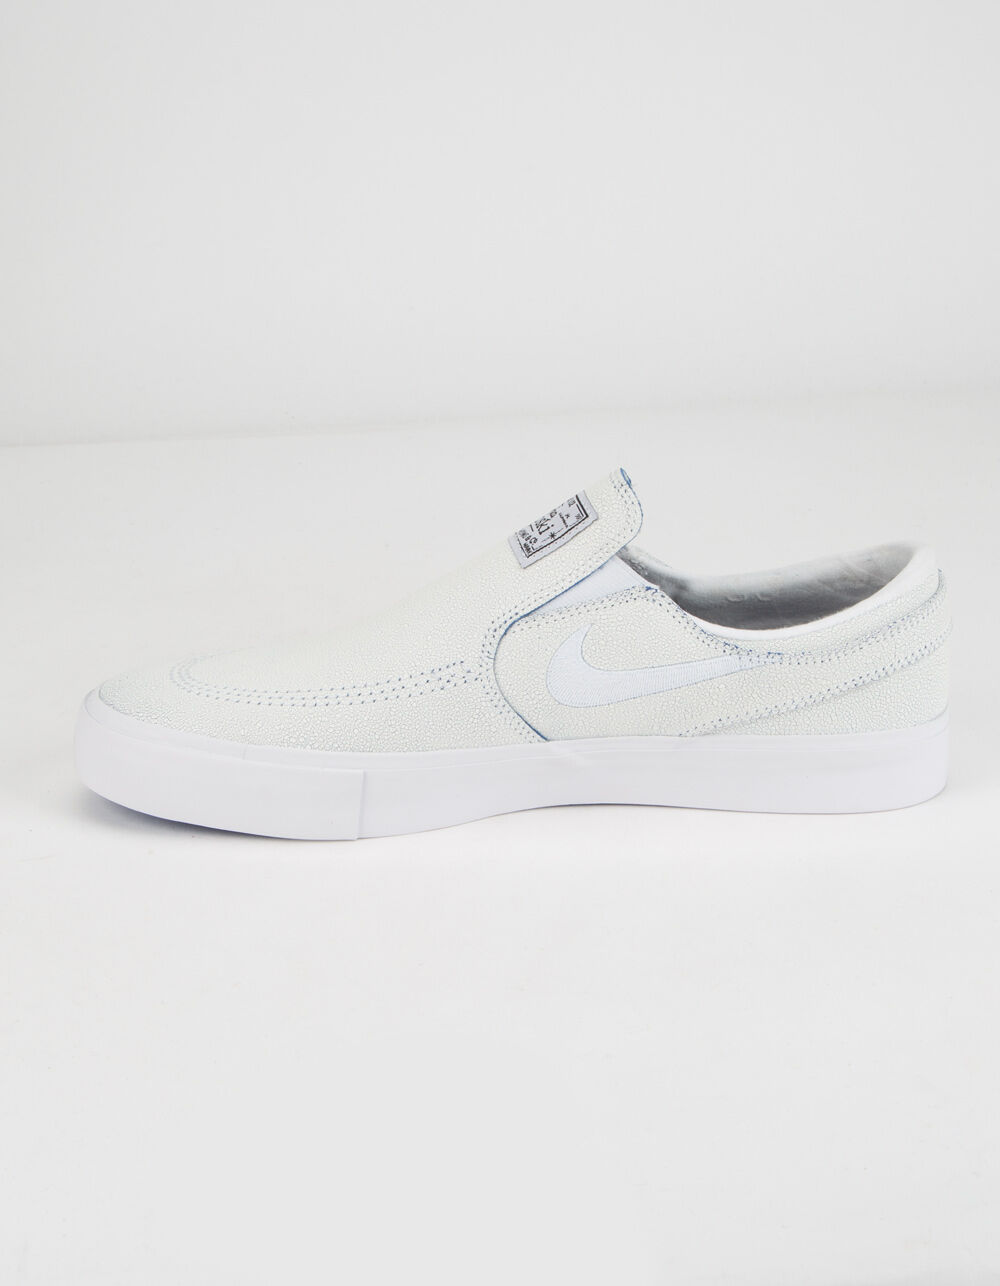 Escudero Impresión sequía NIKE SB Zoom Stefan Janoski Slip RM Premium White Shoes - WHITE | Tillys